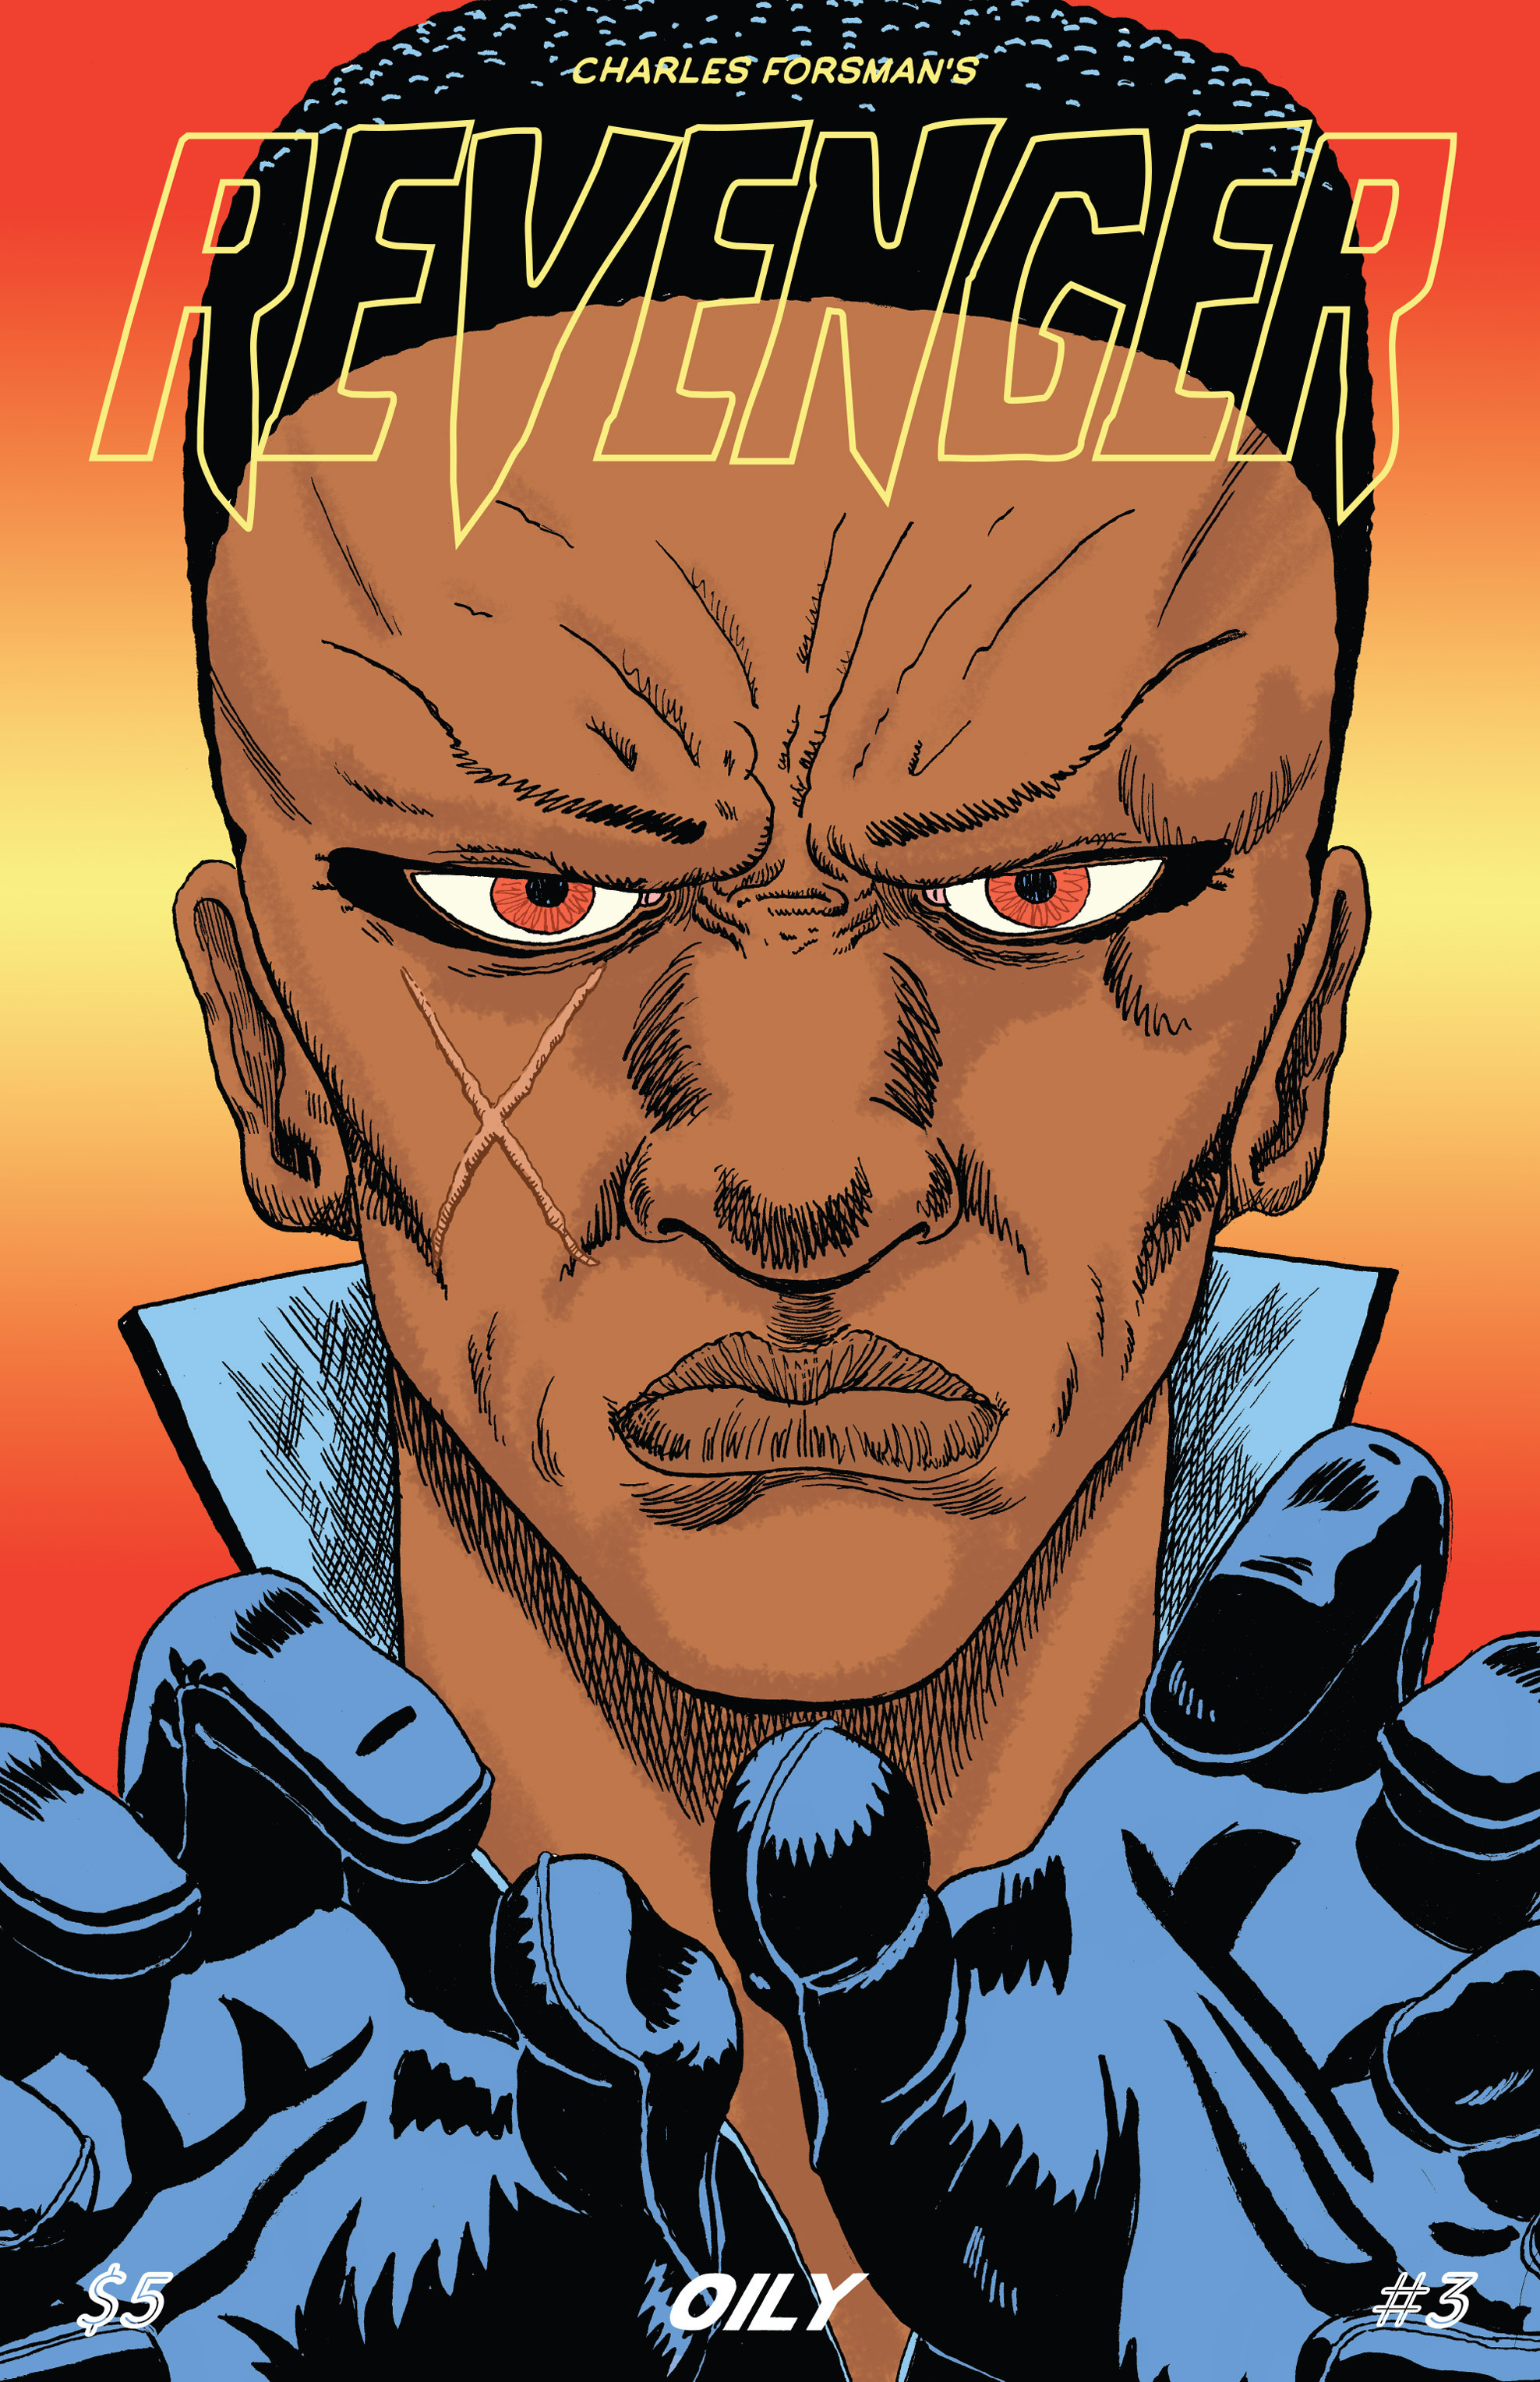 Read online Revenge comic -  Issue #3 - 1